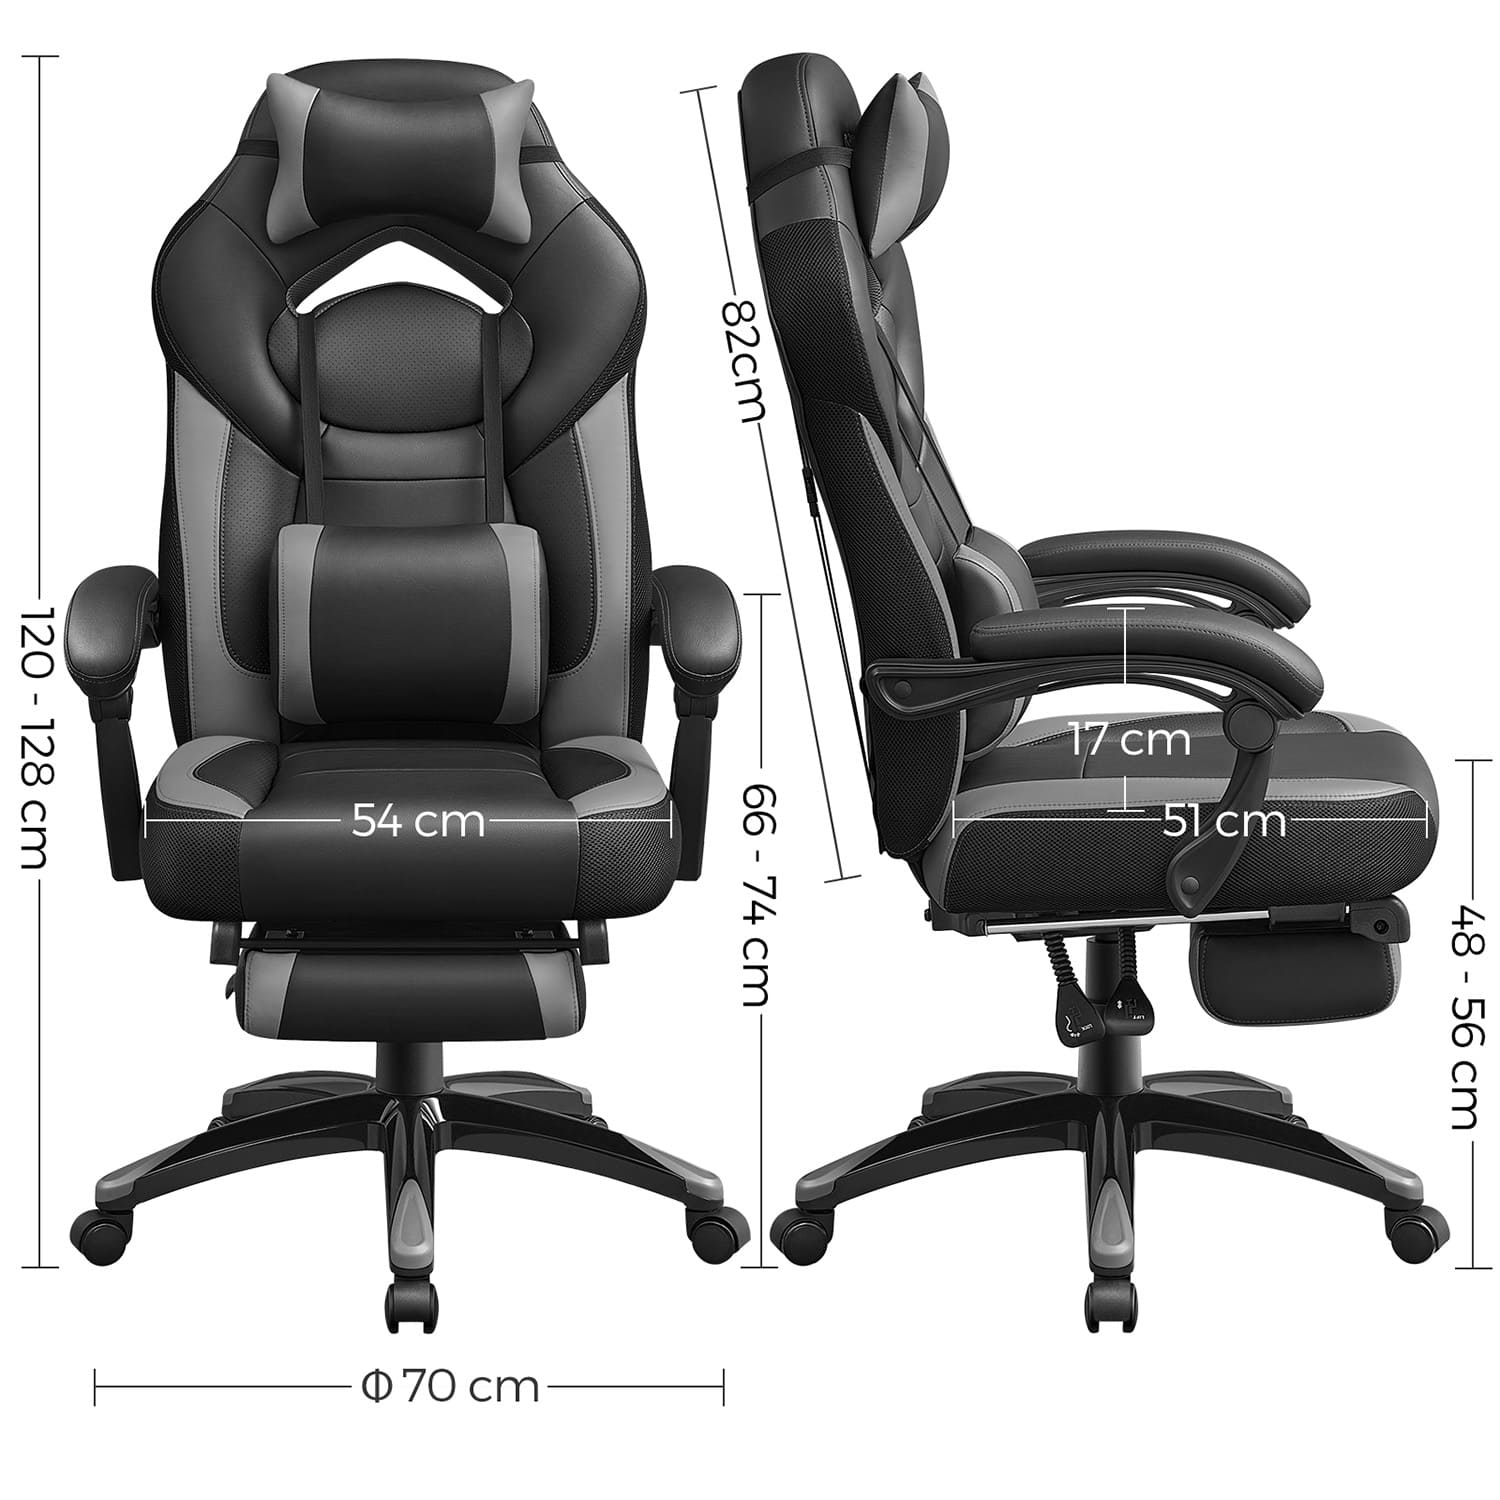 Silla gaming Comprar, silla de oficina, piel sintética. Cuerpo duradero, 150 kg, silla de ruedas, SONGMICS, 6